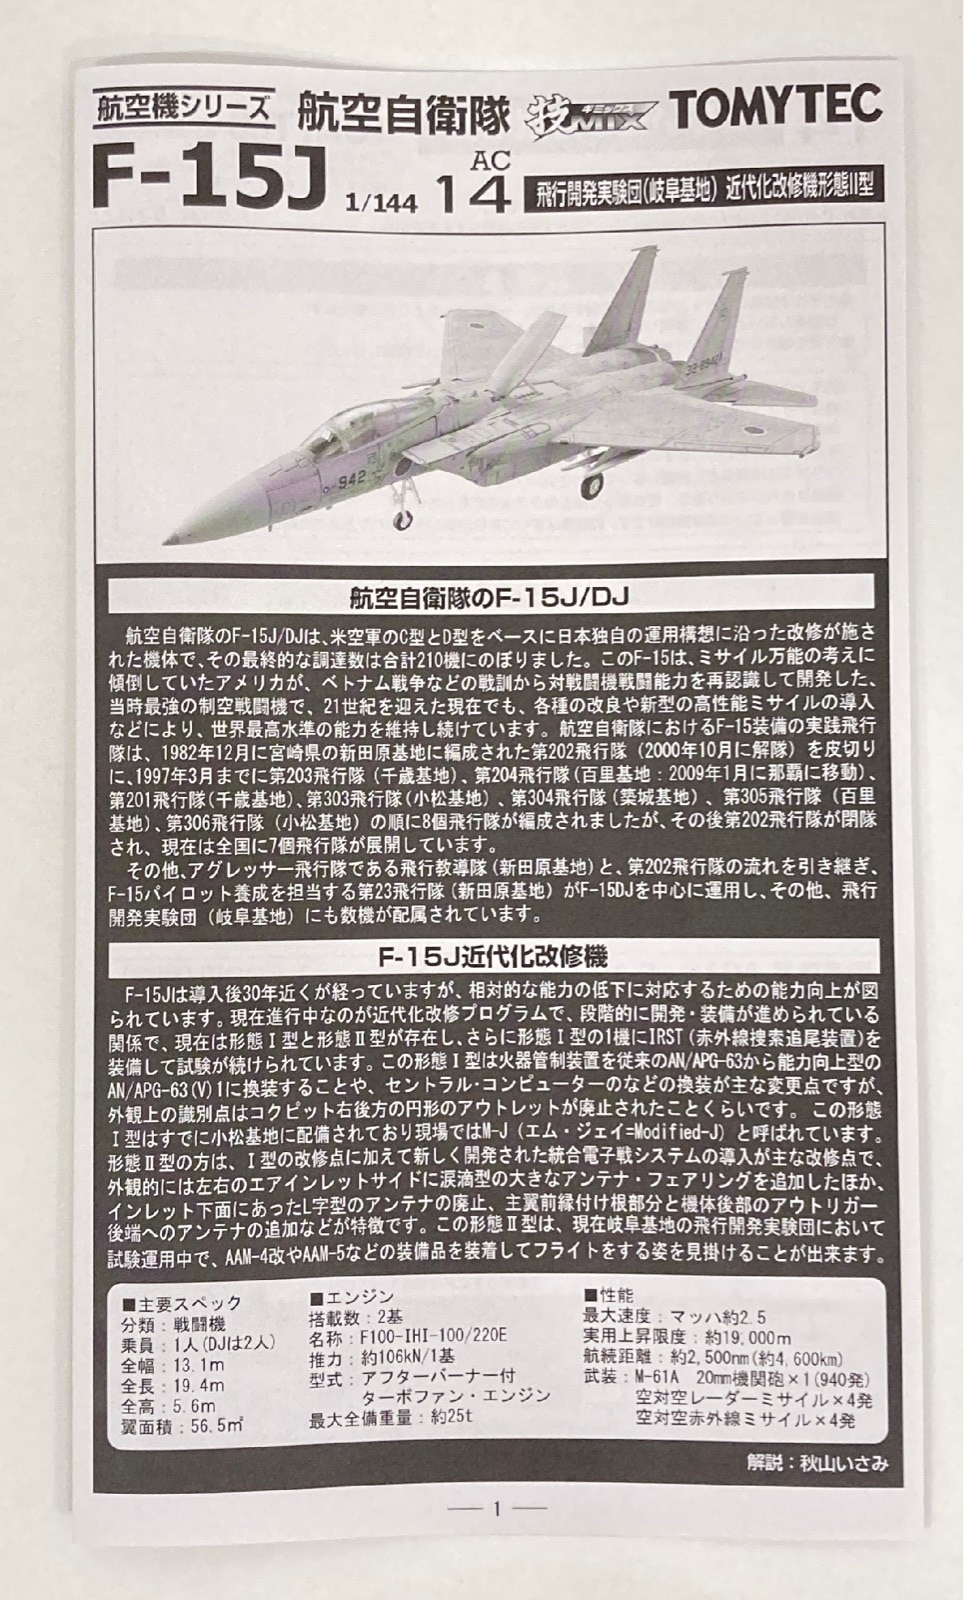 TOMYTEC/技MIX F-15J 飛行開発実験団（岐阜基地） 近代化改修機 - 模型 